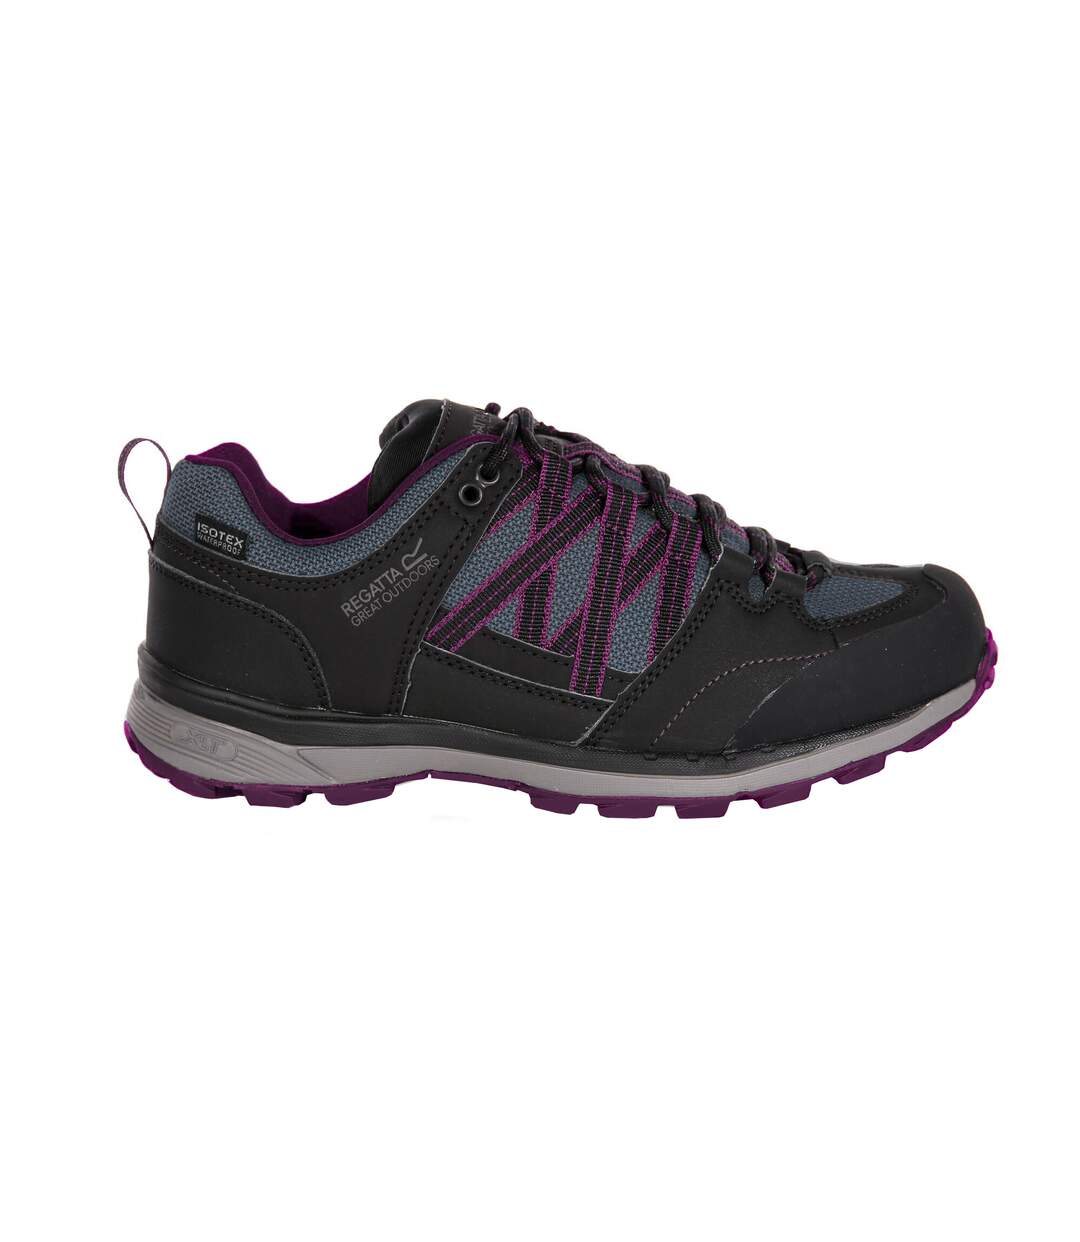 Regatta Womens/Ladies Samaris Low II Hiking Boots (Black/Purple) - UTRG3702